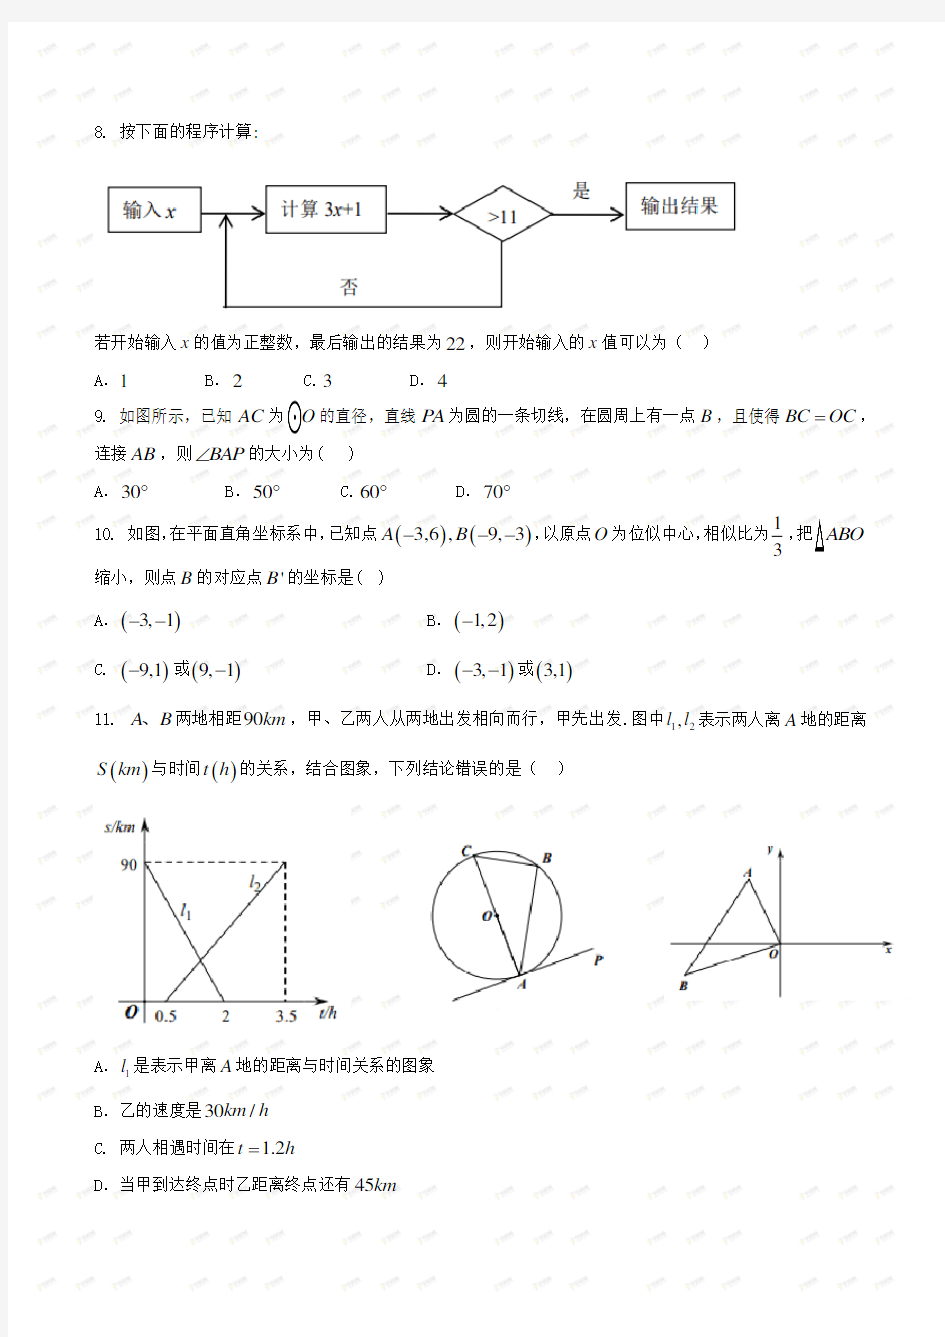 重庆八中2019-2020学年度(上)期末考试初三年级数学试题